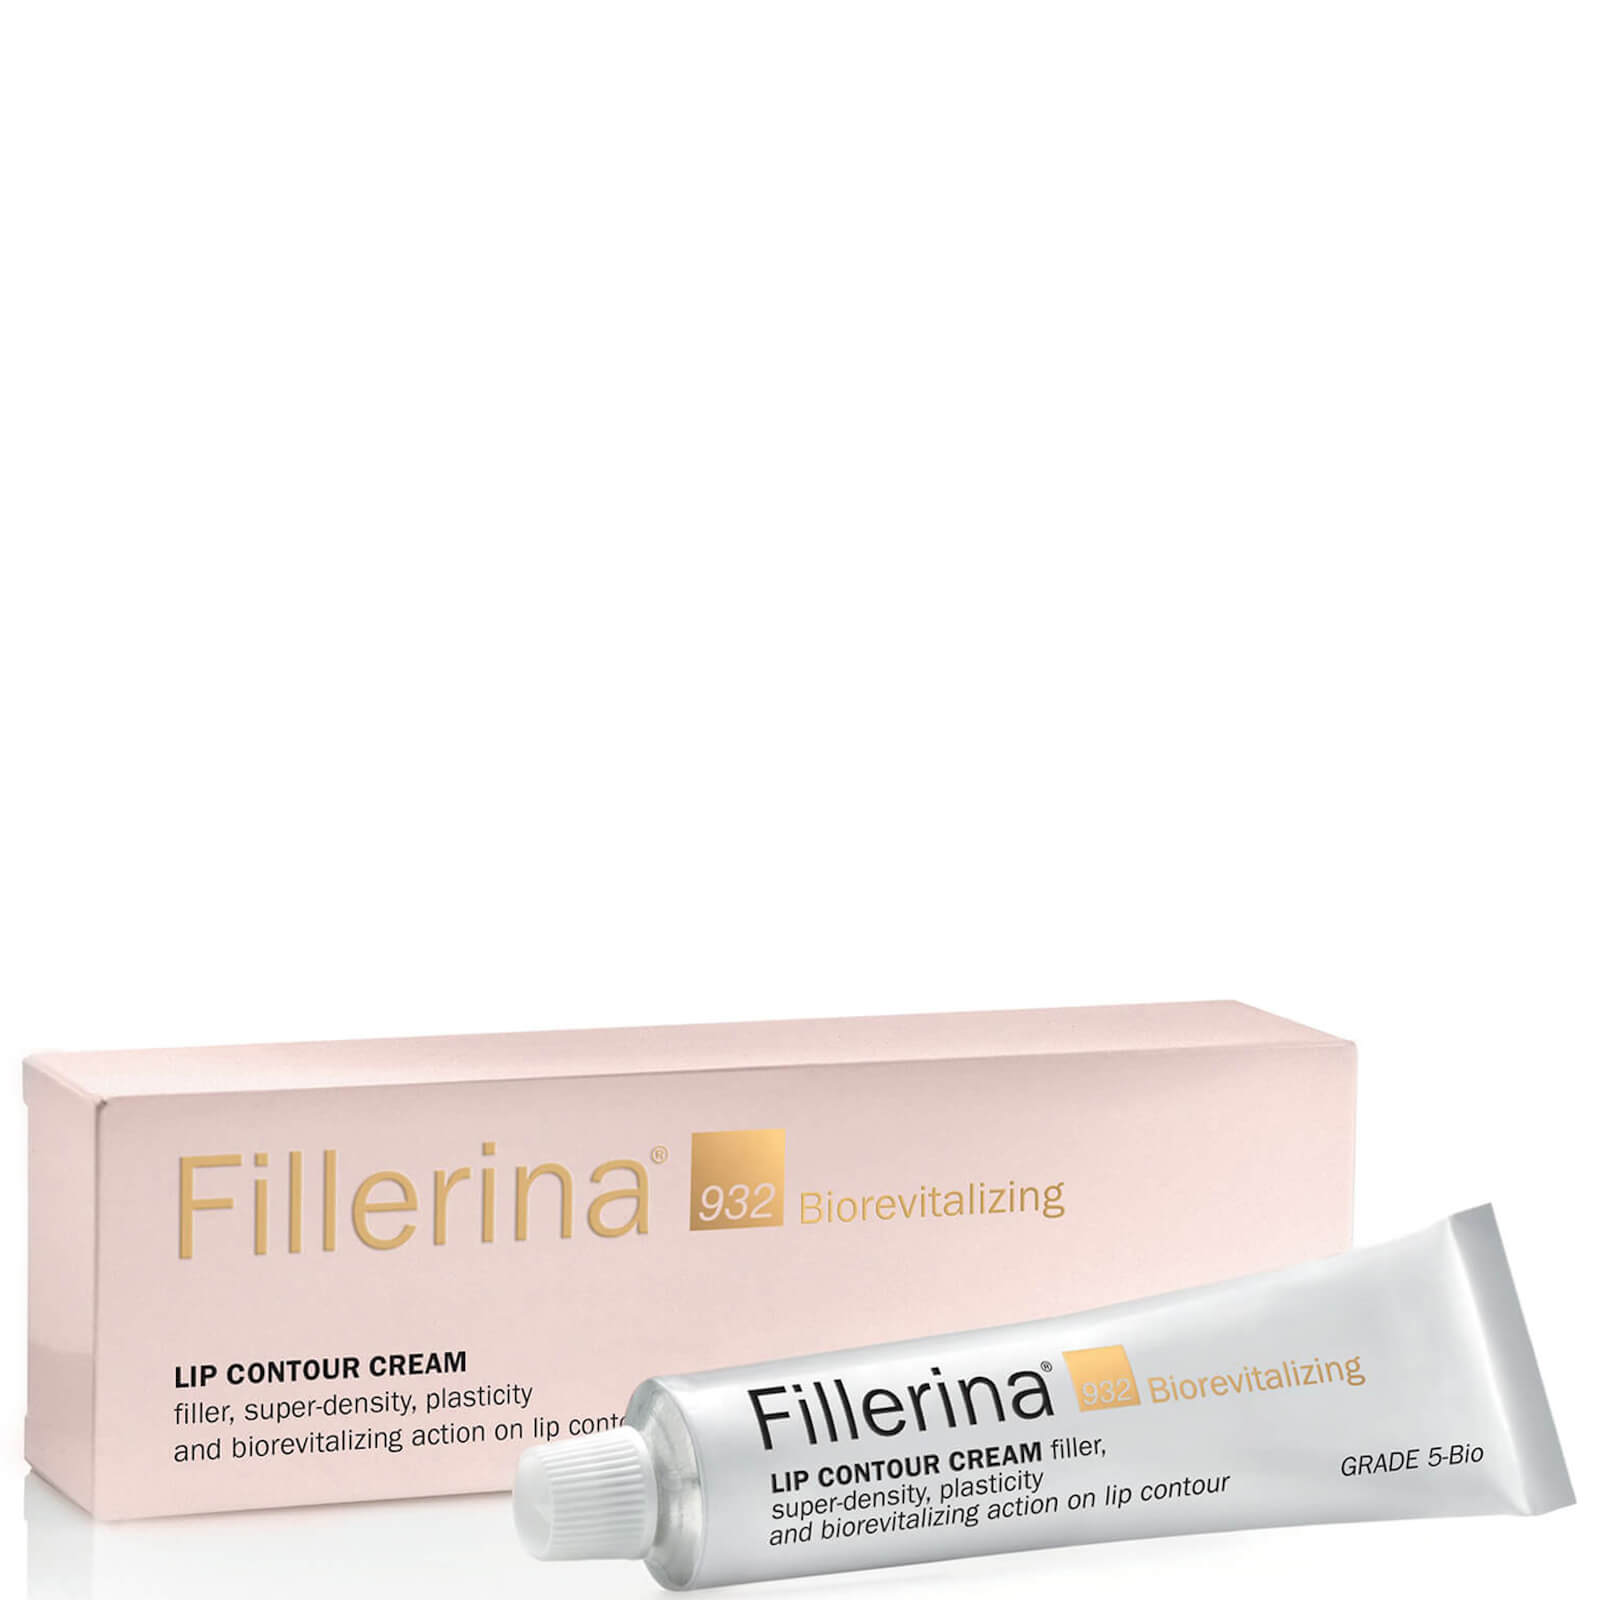 Photos - Cream / Lotion Fillerina 932 Biorevitalizing Lip Contour Cream Grade 5 15ml 00601